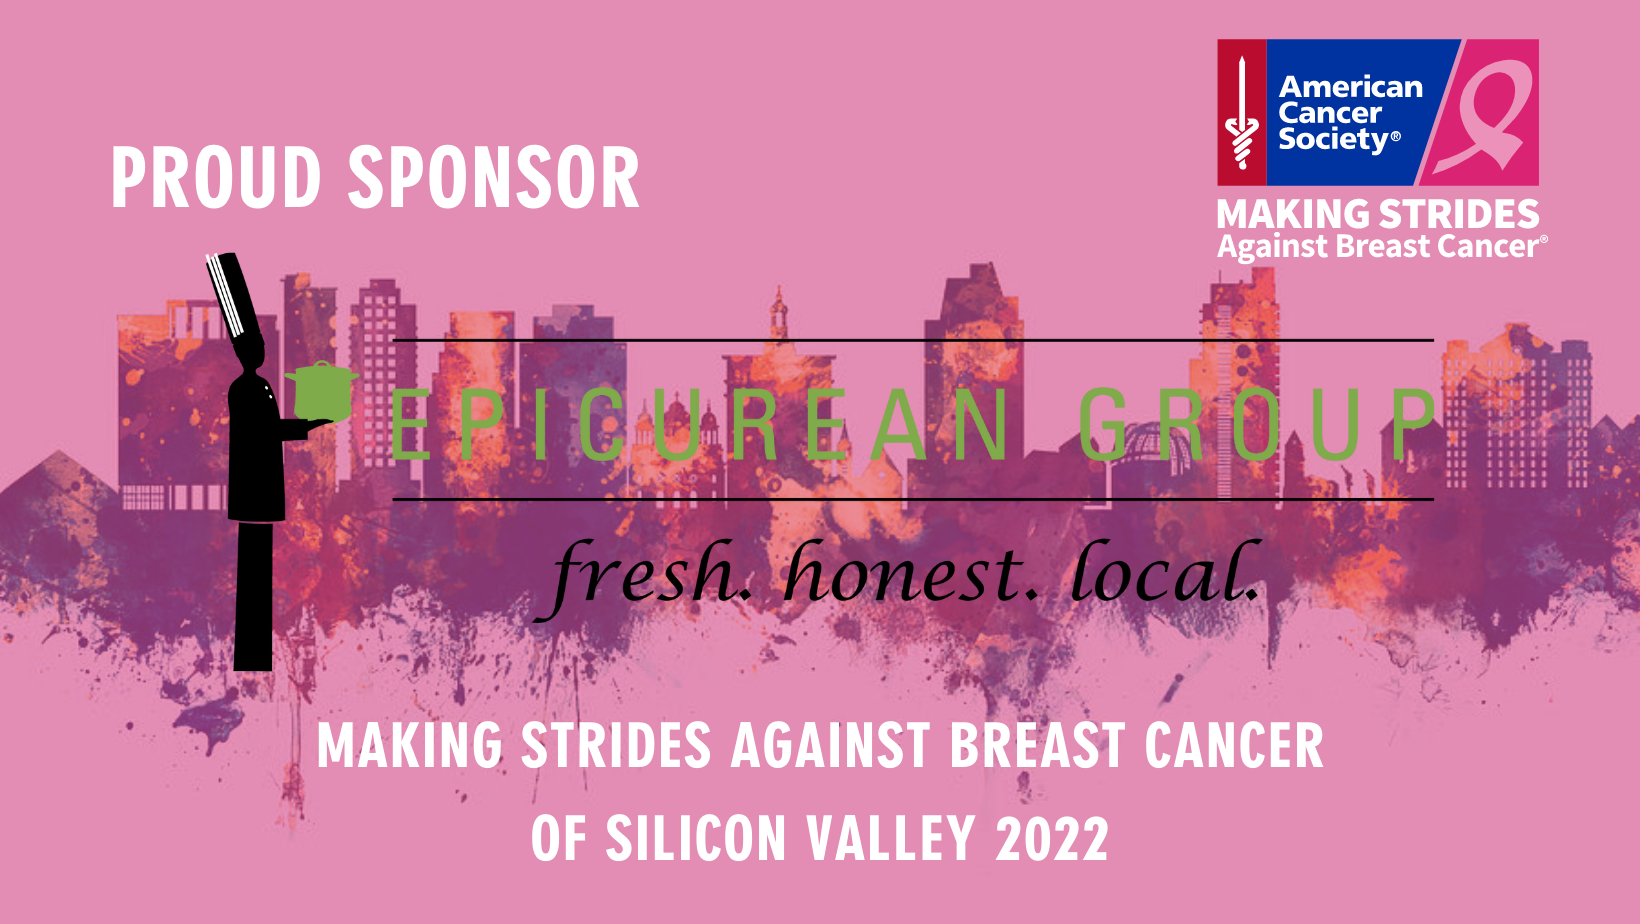 Epicurean Group sponsors Making Strides Against Breast Cancer